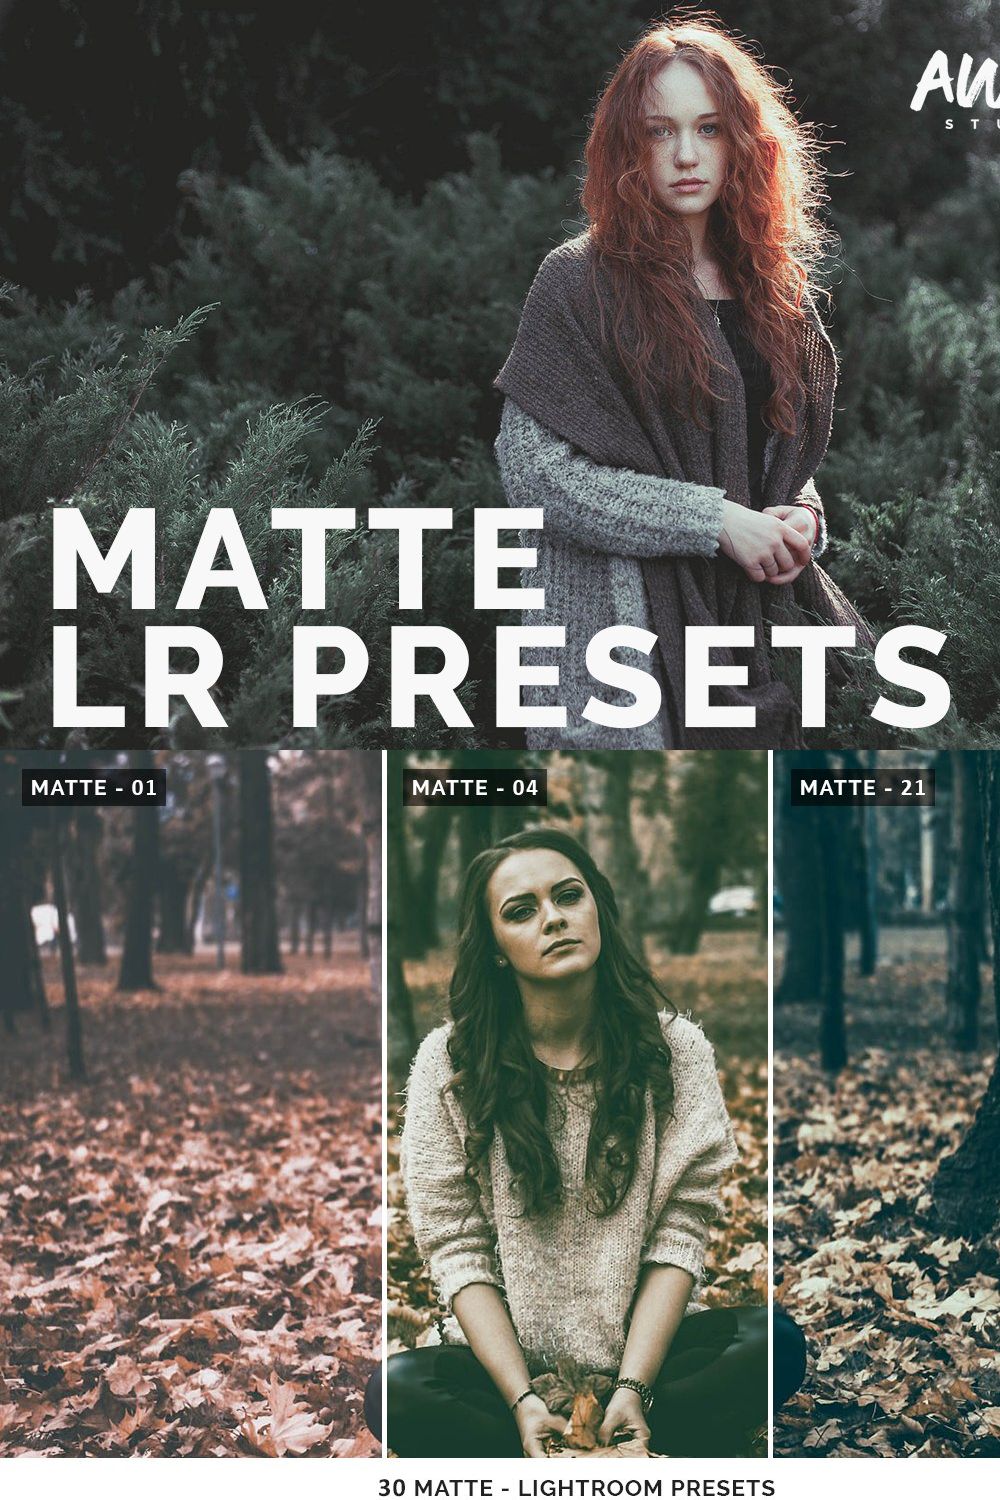 Matte - Lightroom Presets pinterest preview image.